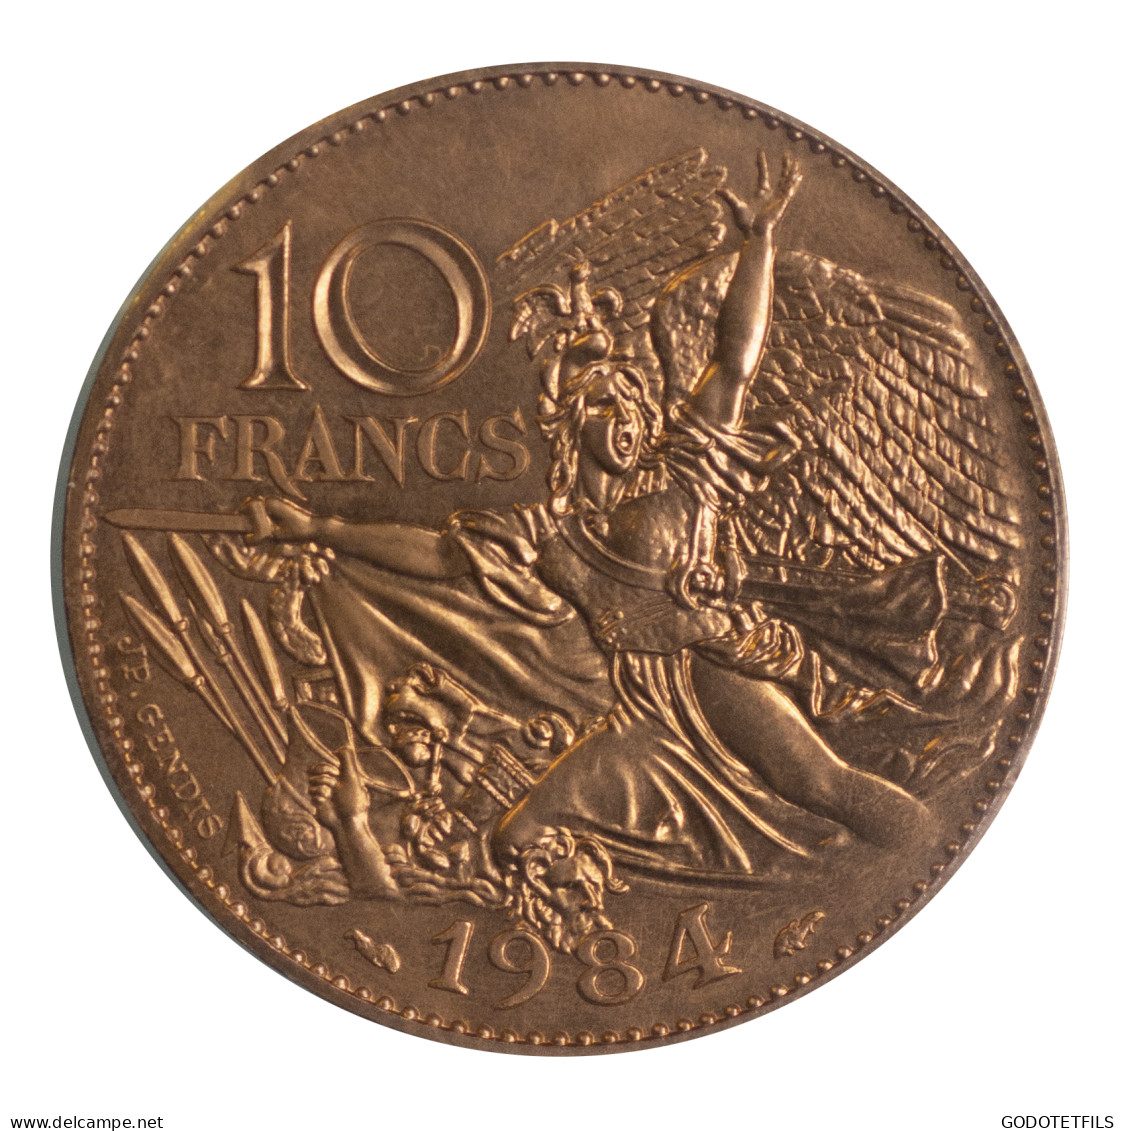 10 Francs François Rude-Essai-1984 - Prova